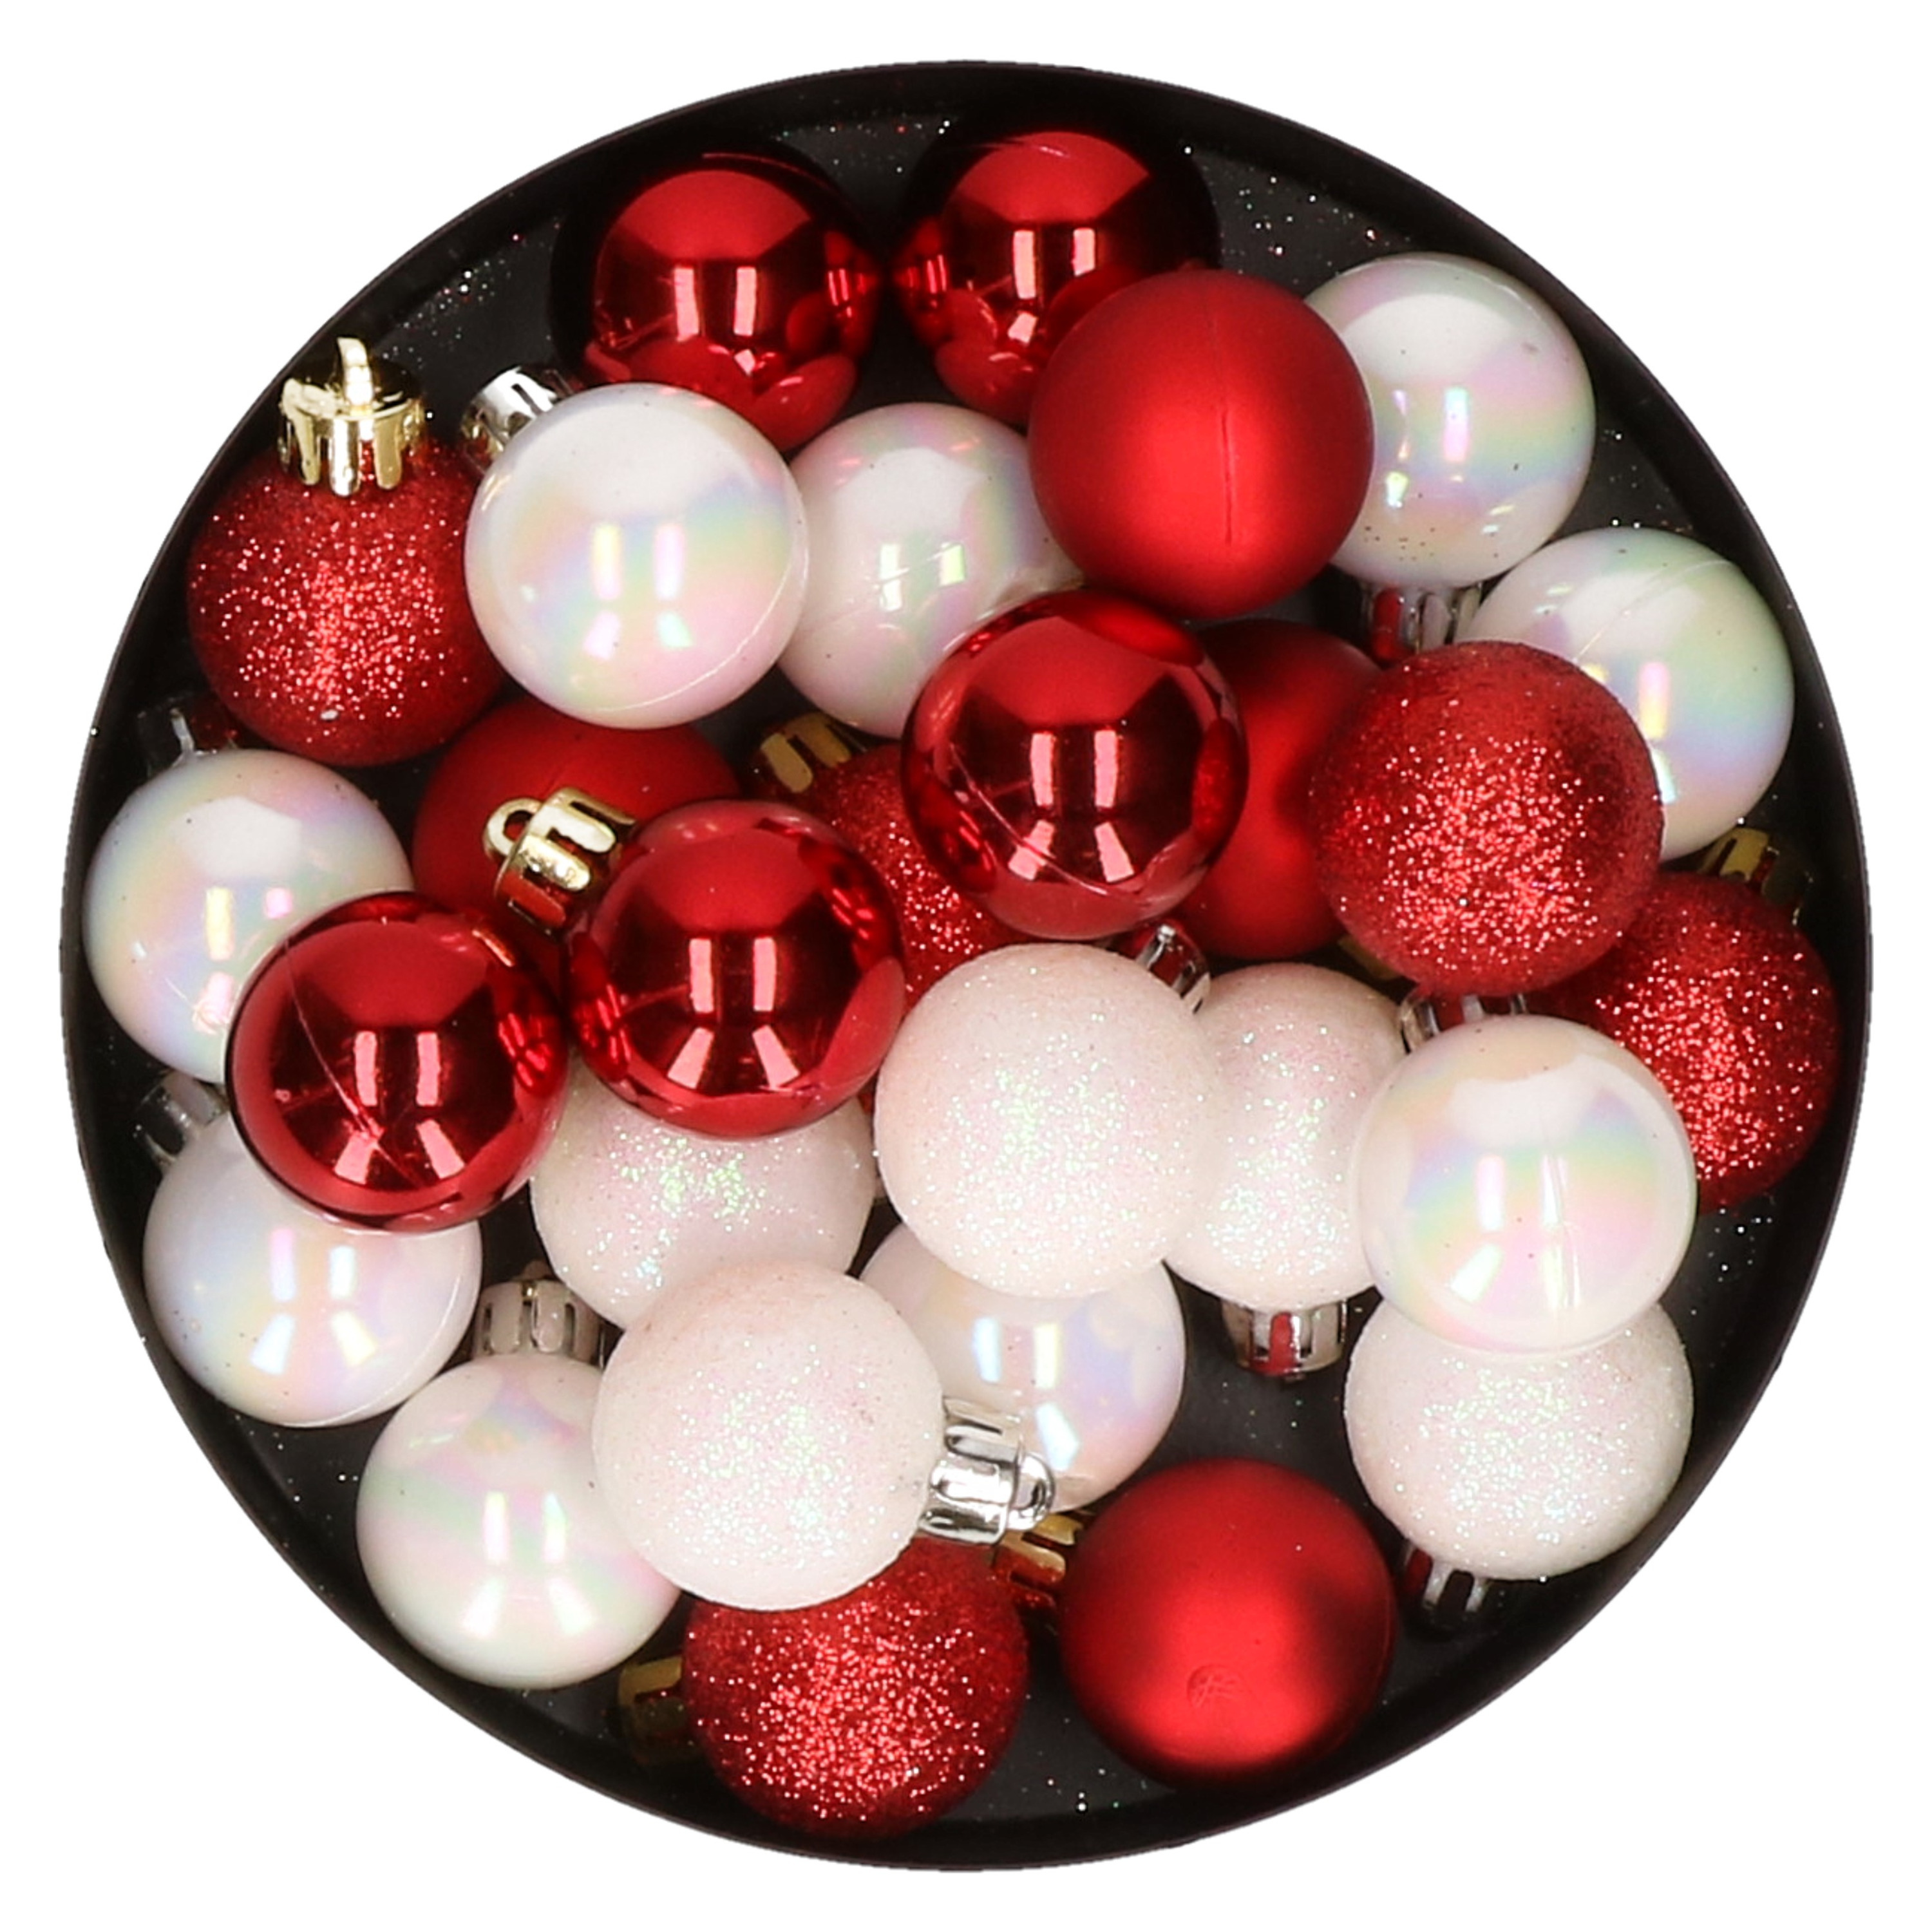 28x stuks kunststof kerstballen parelmoer wit en rood mix 3 cm